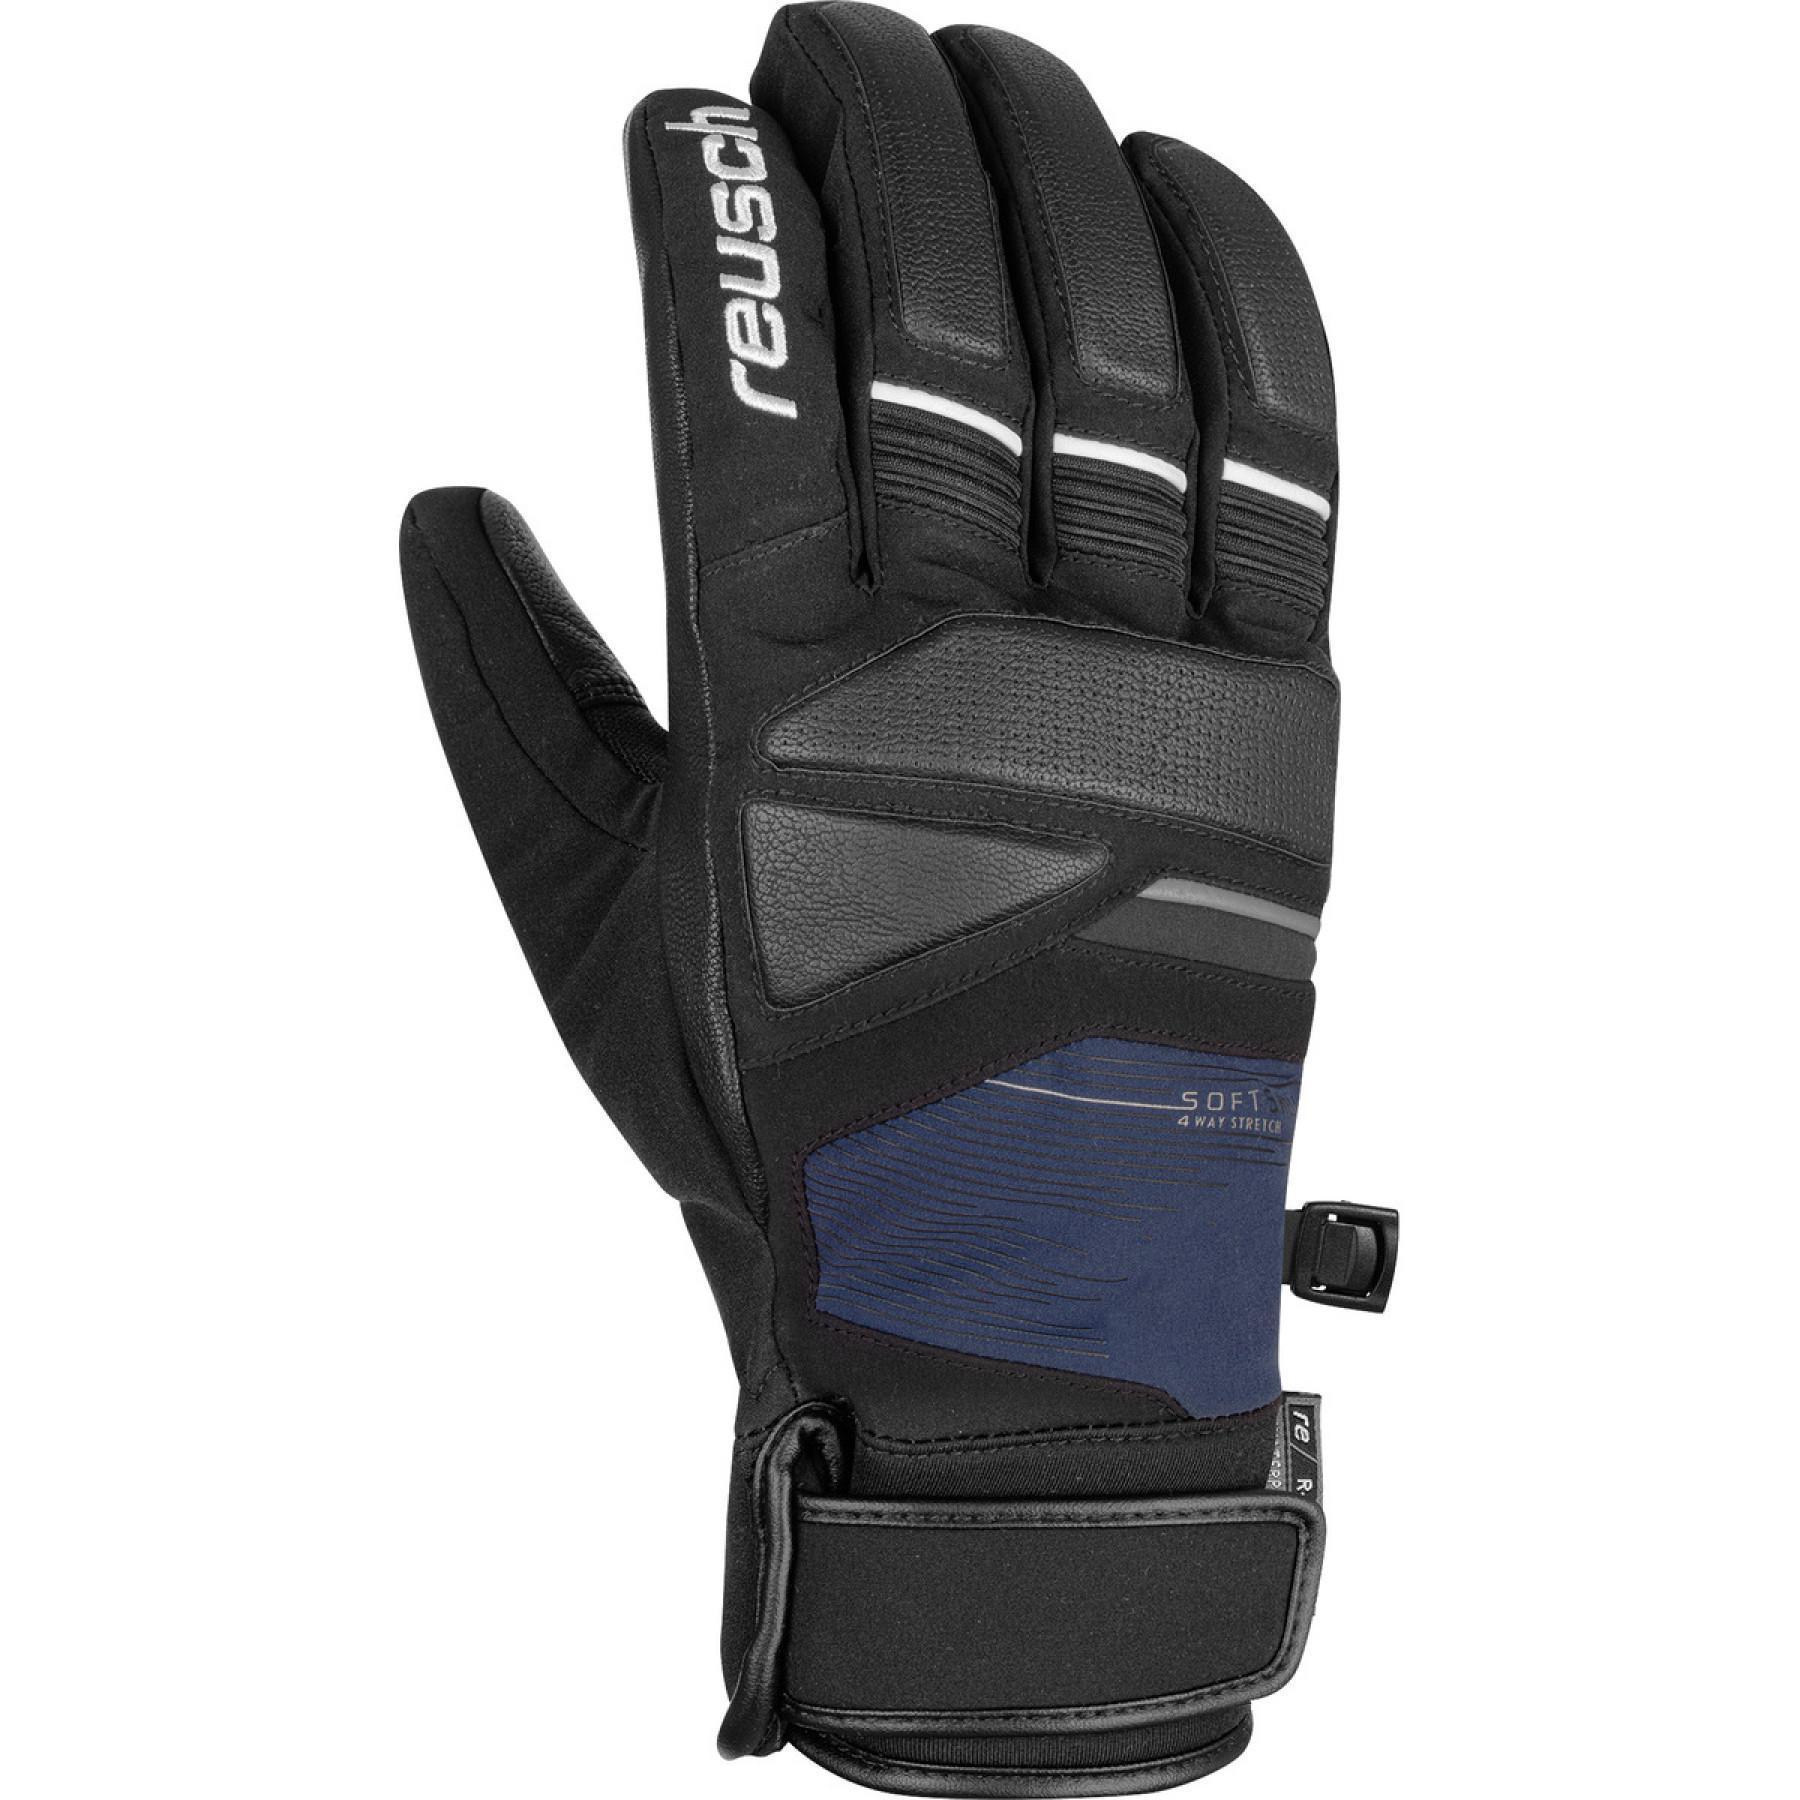 Handschuhe Reusch Storm R-tex® Xt